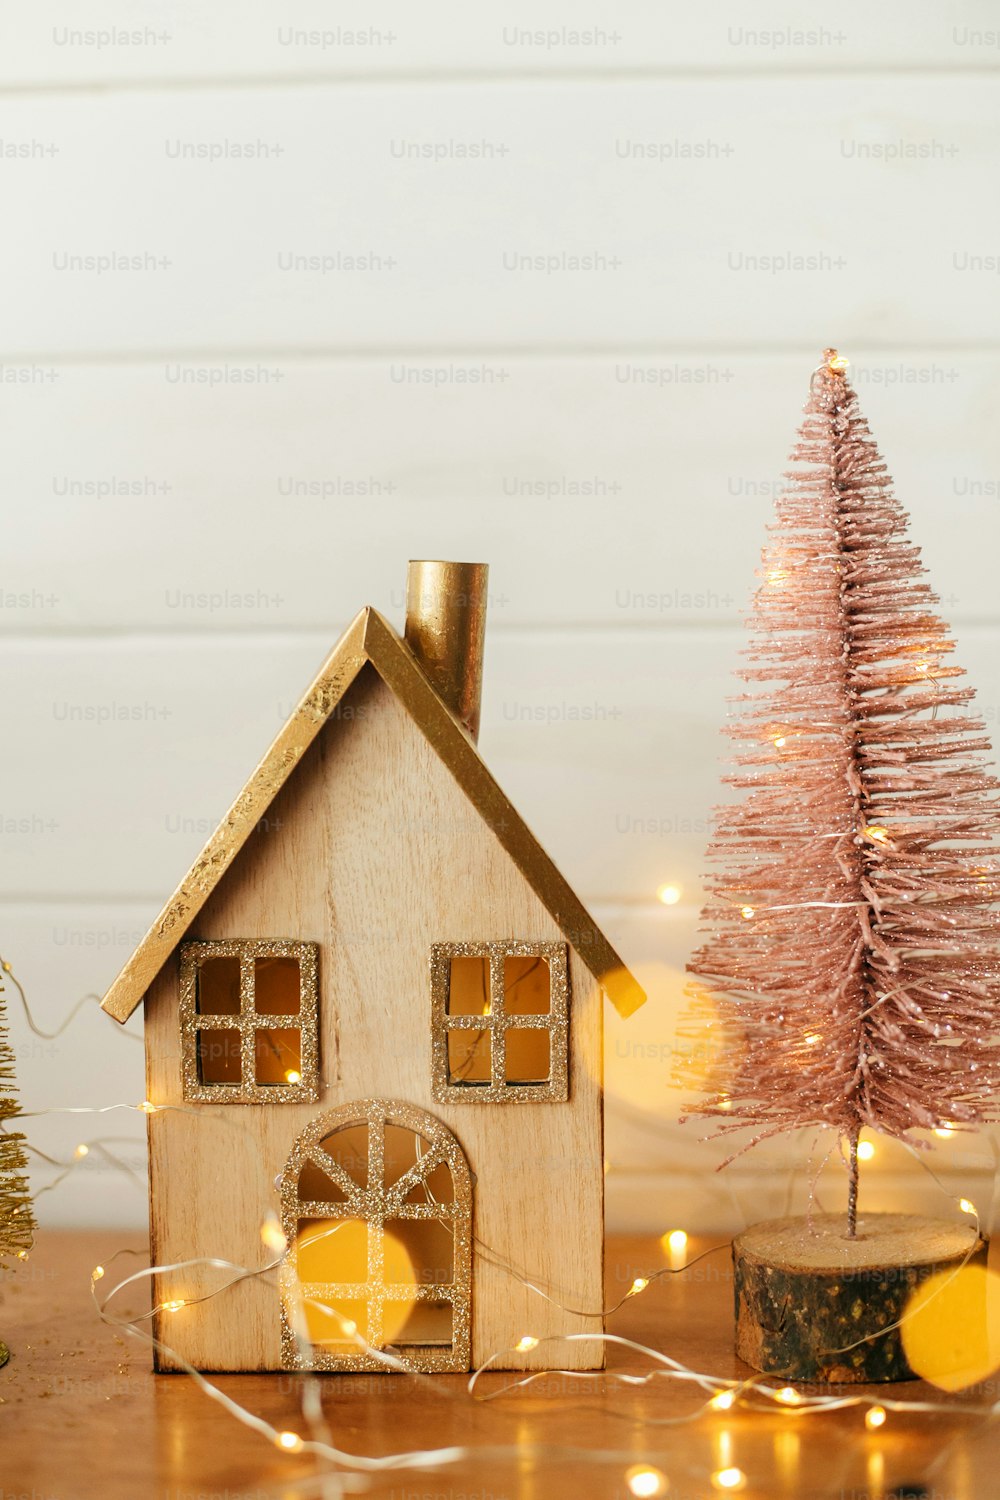 세련 된 크리스마스 하우스와 황금빛 조명에 반짝이는 크리스마스 트리. 스칸디나비아 객실의 현대적인 축제 장식. 목조 주택과 나무 장난감이 있는 미니어처 마을. 즐거운 성탄절